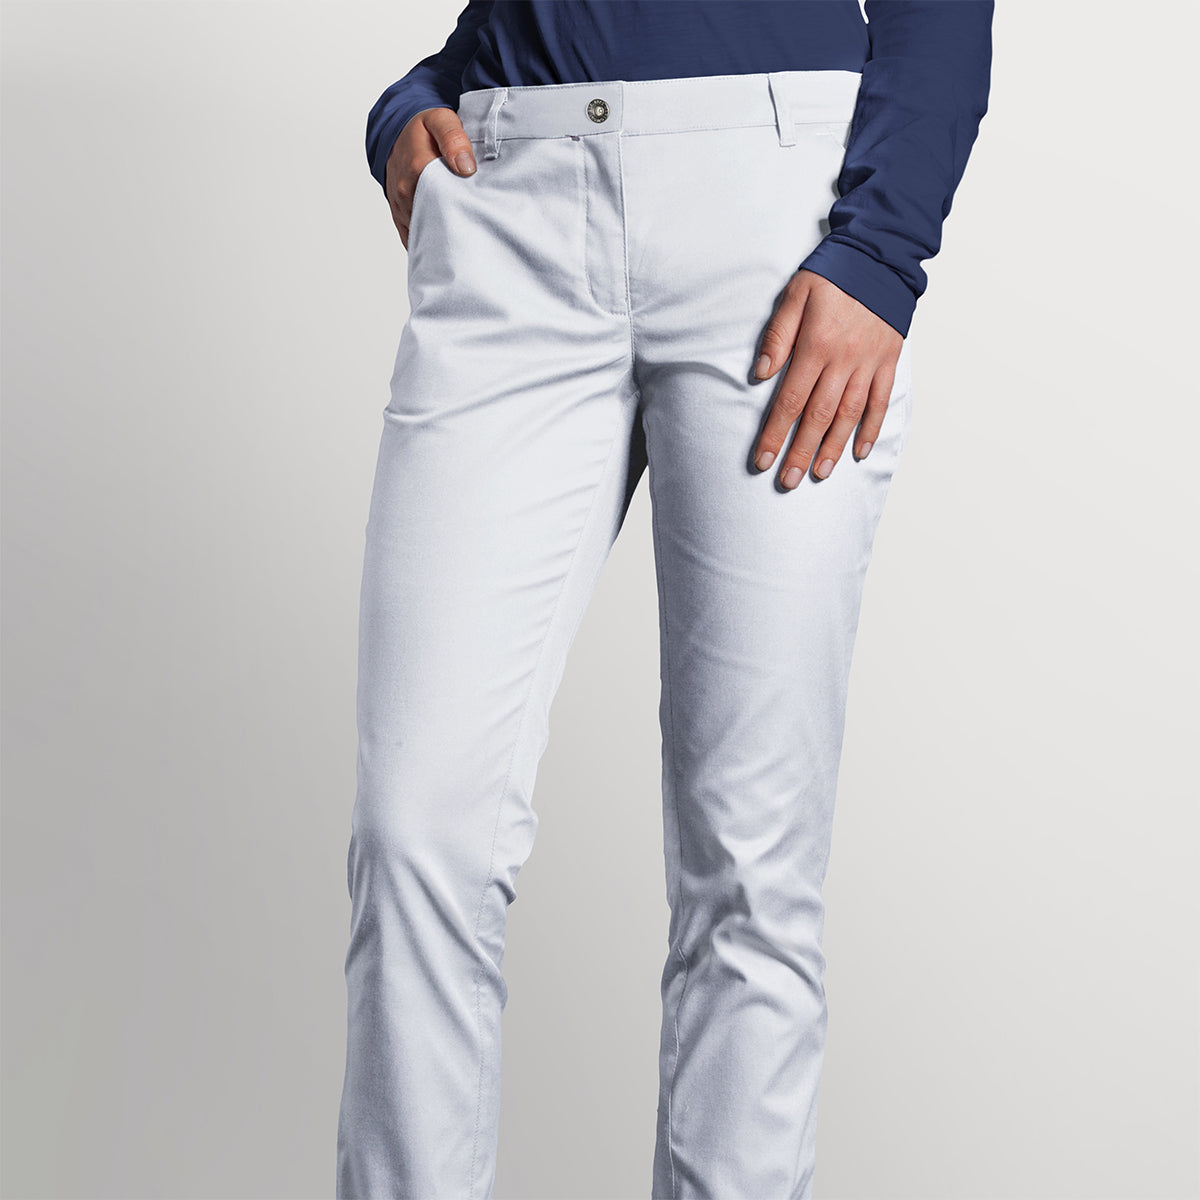 (6 stk.) Karlowsky - bukser med 5 lommer til damer - hvid - størrelse: 50